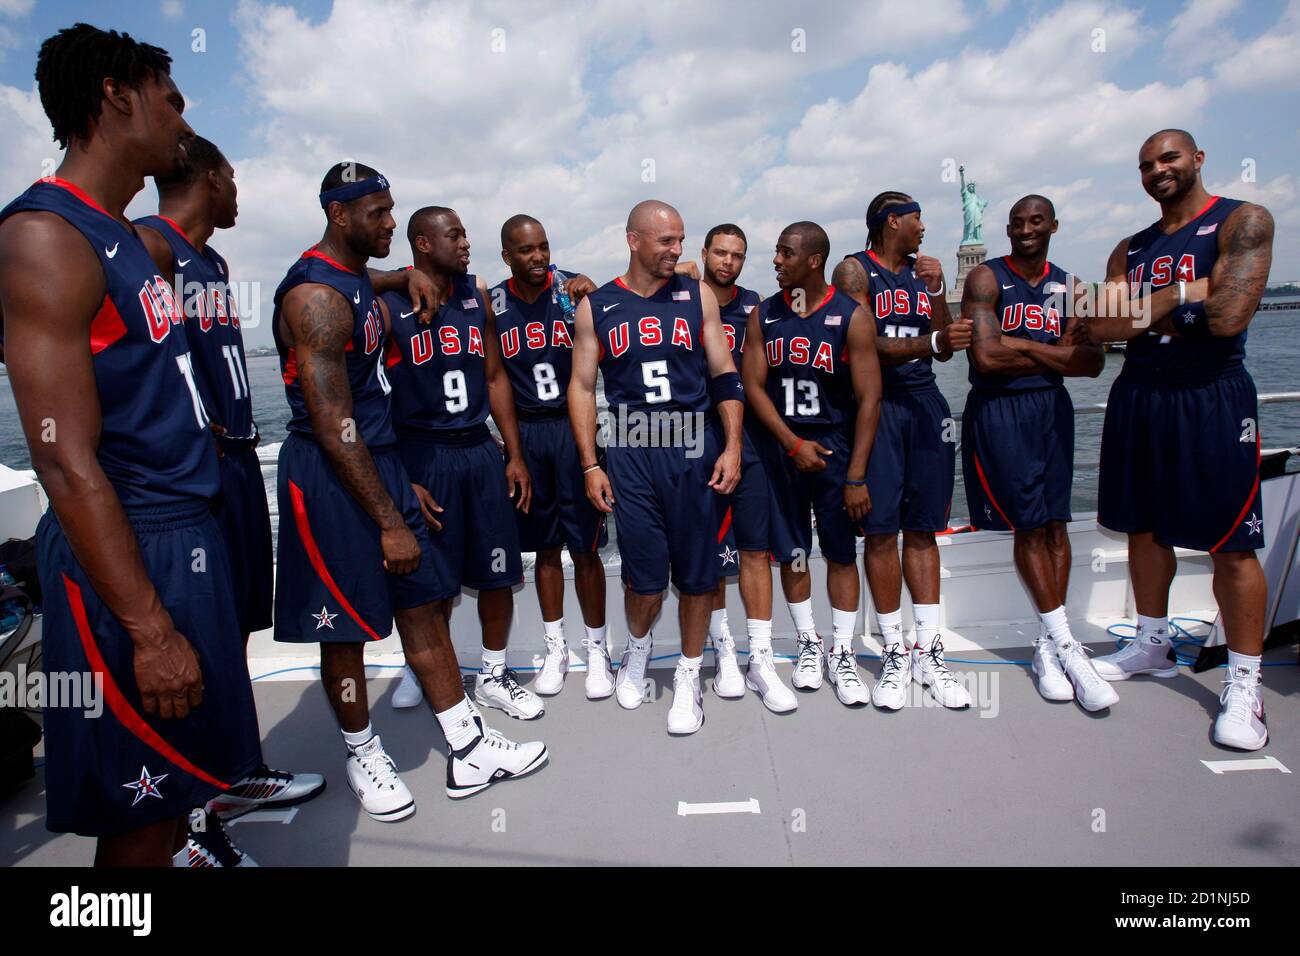 L'équipe américaine de basket-ball olympique s'arrête pour prendre des  photos alors qu'elle se trouve dans son uniforme officiel sur le pont  supérieur d'un bateau près de la Statue de la liberté lors